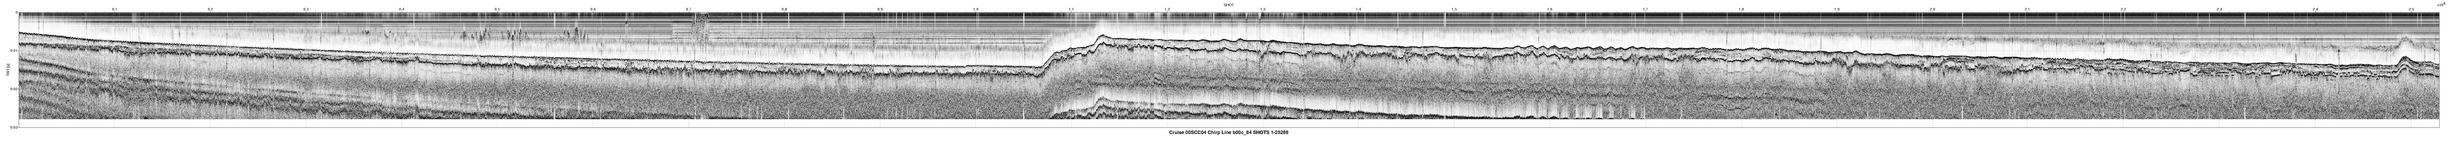 00SCC04 b00c_84 seismic profile image